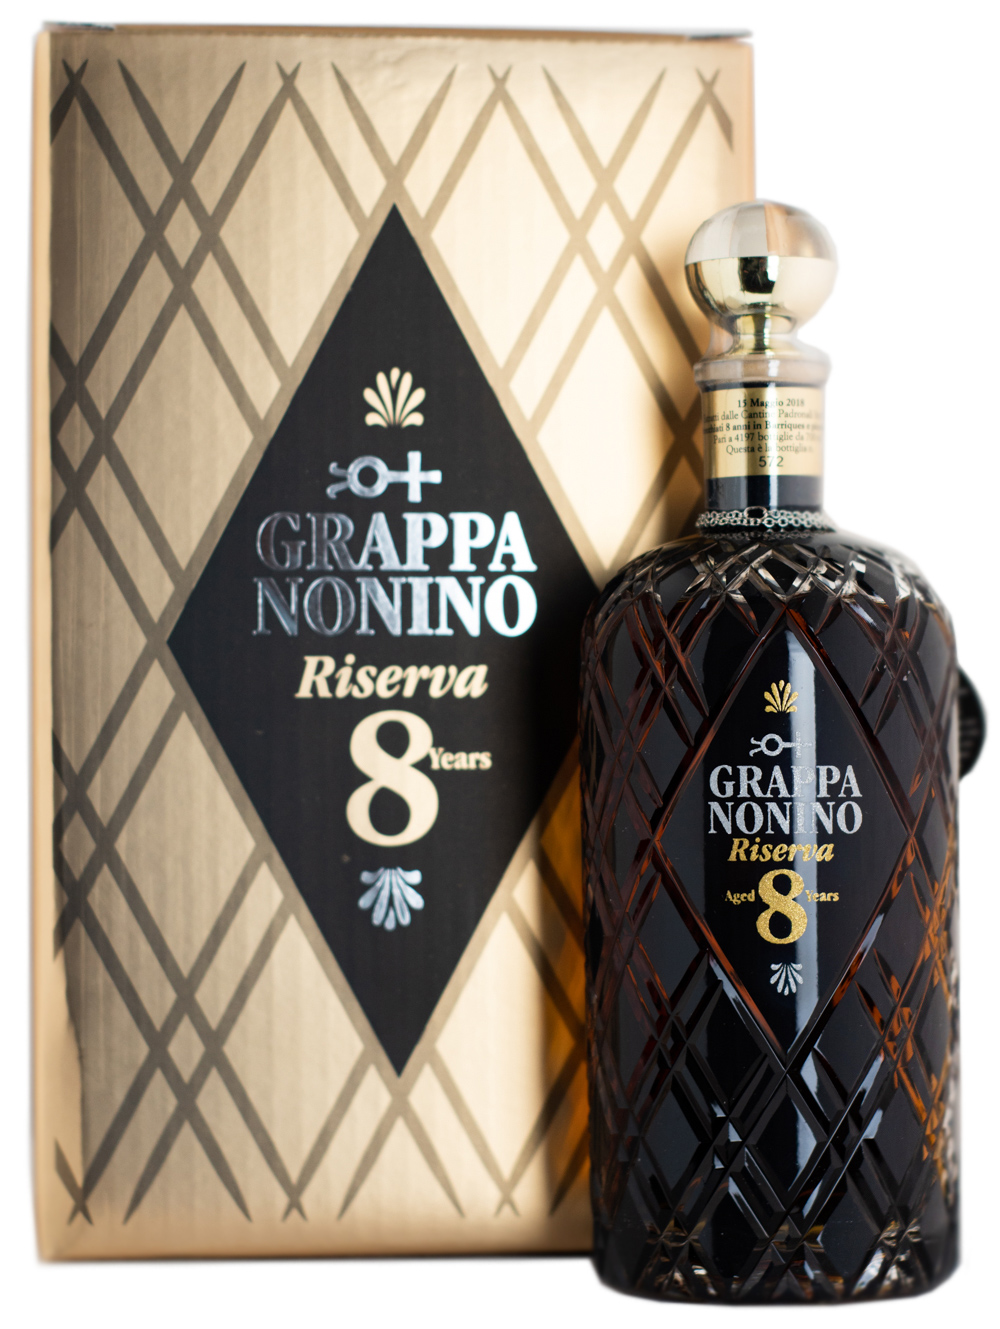 Nonino Grappa Riserva 8 Jahre günstig kaufen